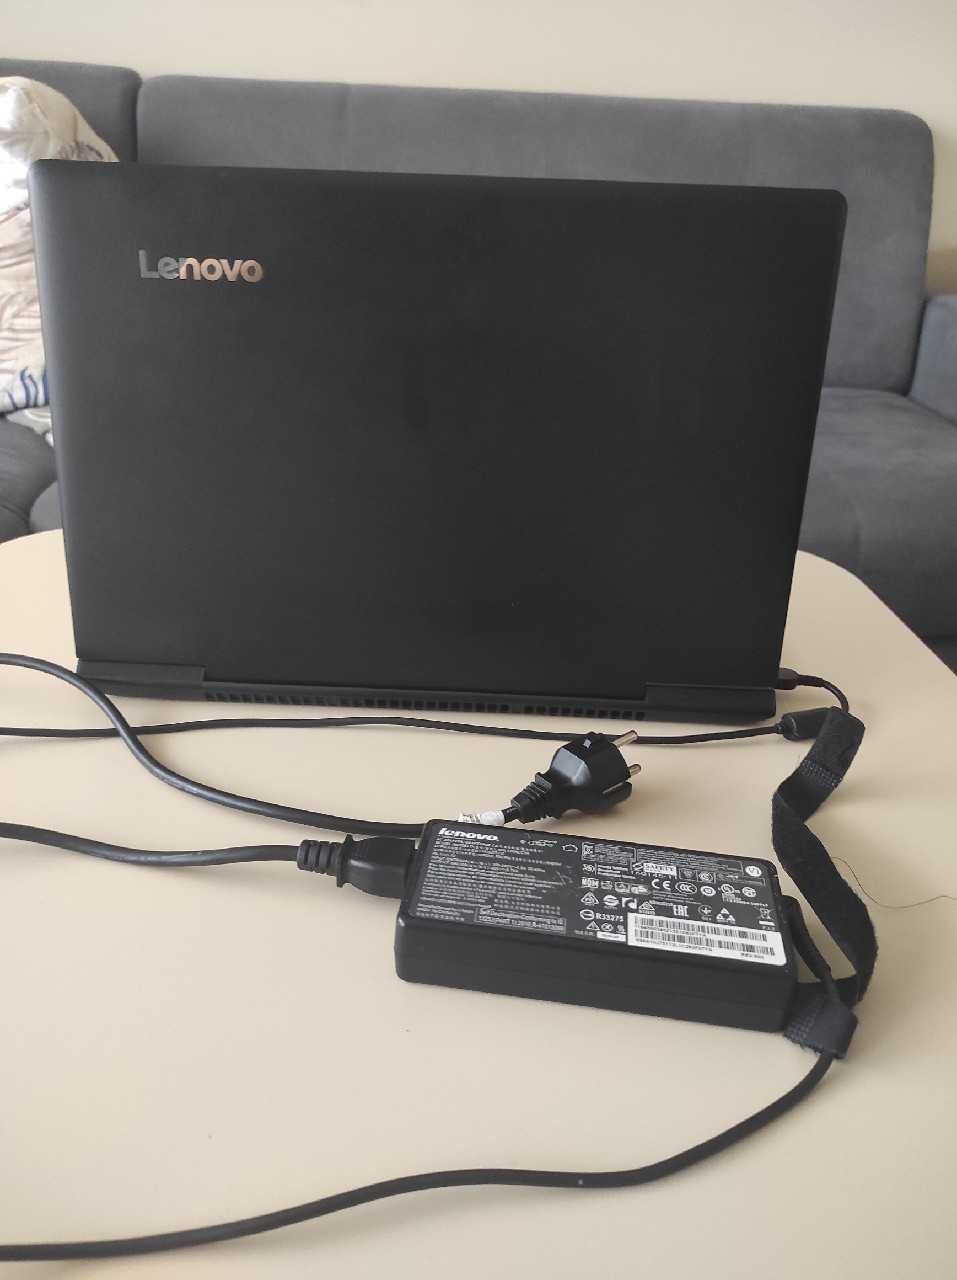 Lenovo Ideapad 700-15 i7-6700HQ/8GB/1000 GTX950M c